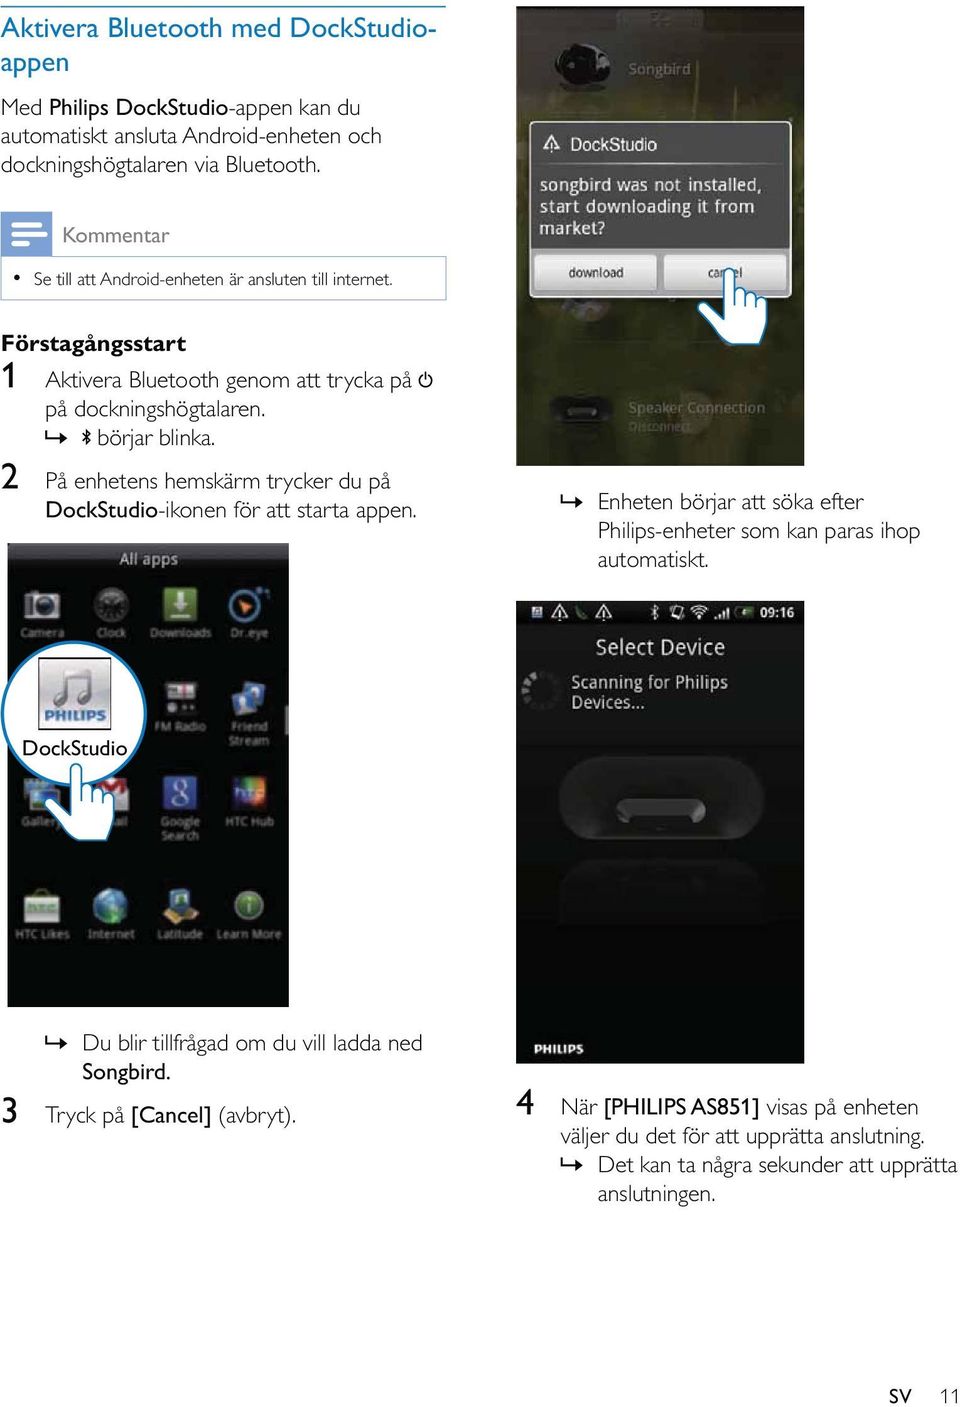 2 På enhetens hemskärm trycker du på DockStudio-ikonen för att starta appen.» Enheten börjar att söka efter Philips-enheter som kan paras ihop automatiskt.